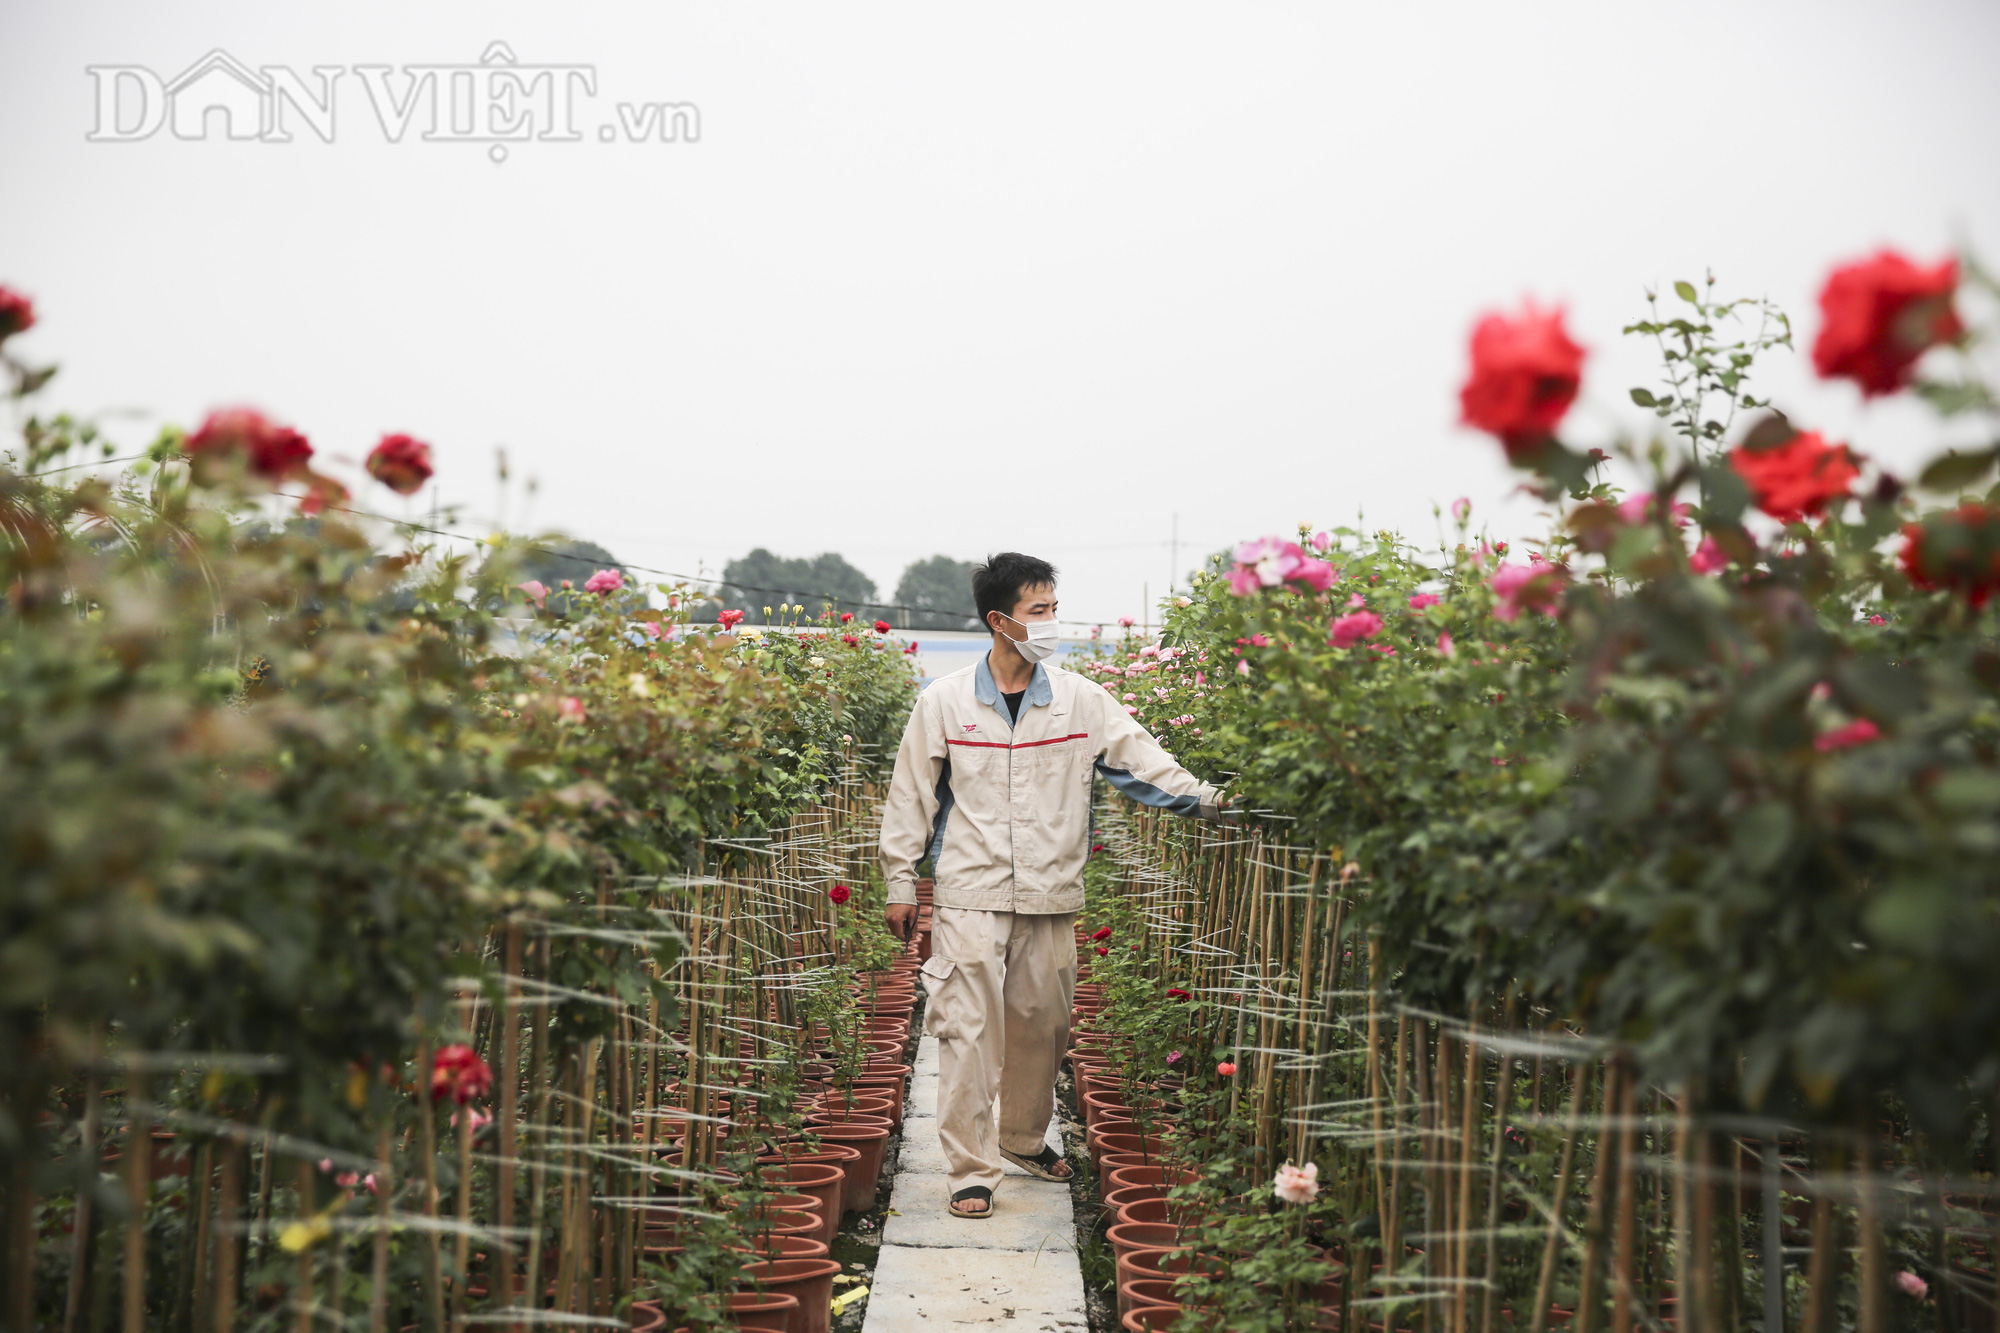 Gian nan khôi phục 100ha đất trồng hoa tại Hạ Lôi  - Ảnh 7.